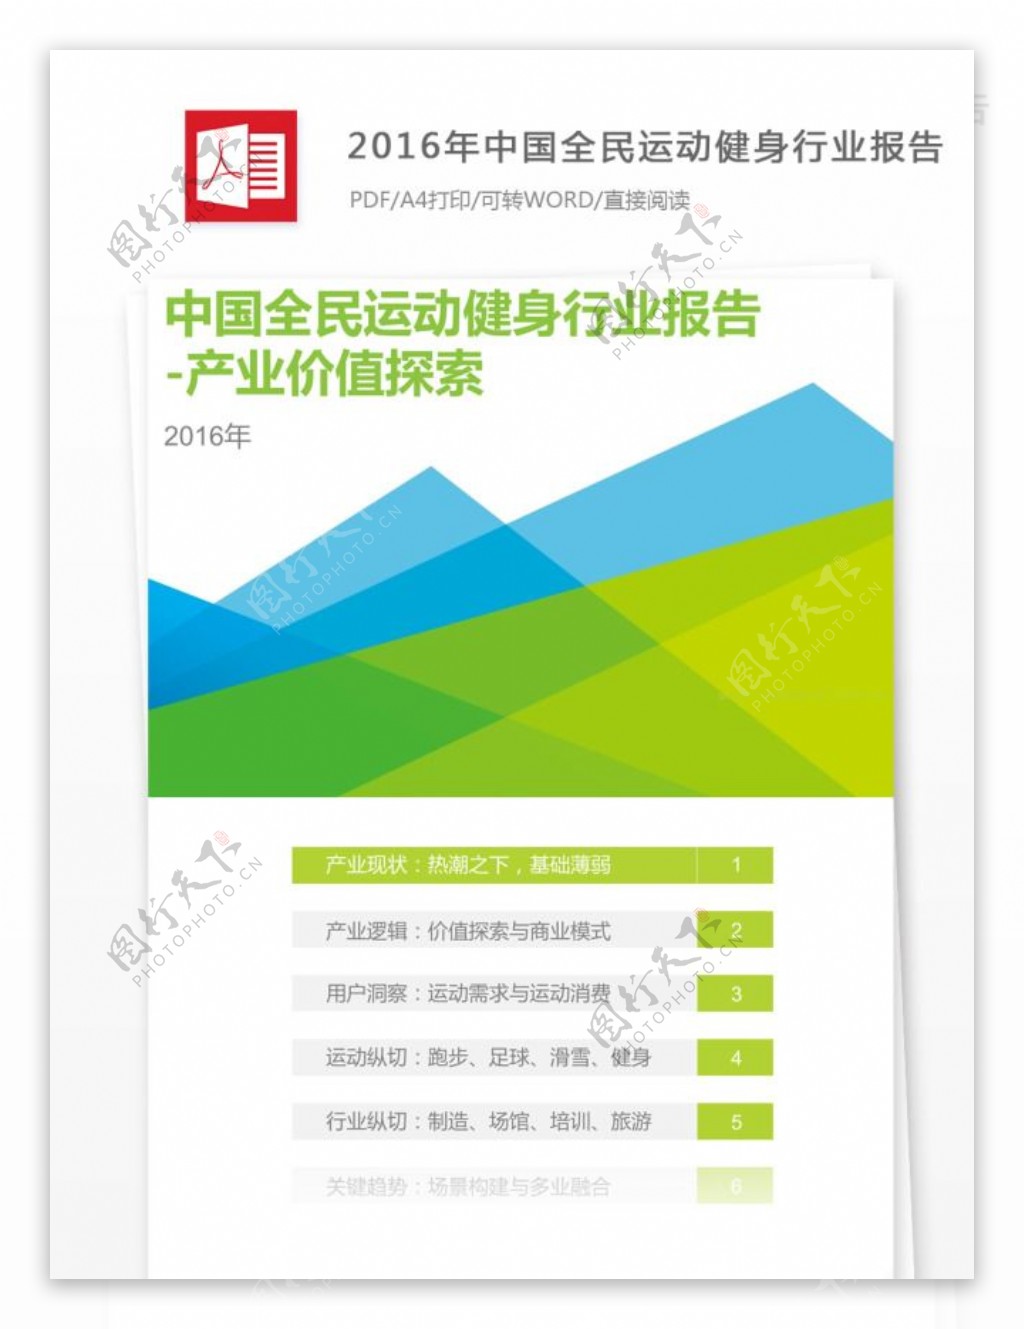 2016年中国全民运动健身行业报告案例